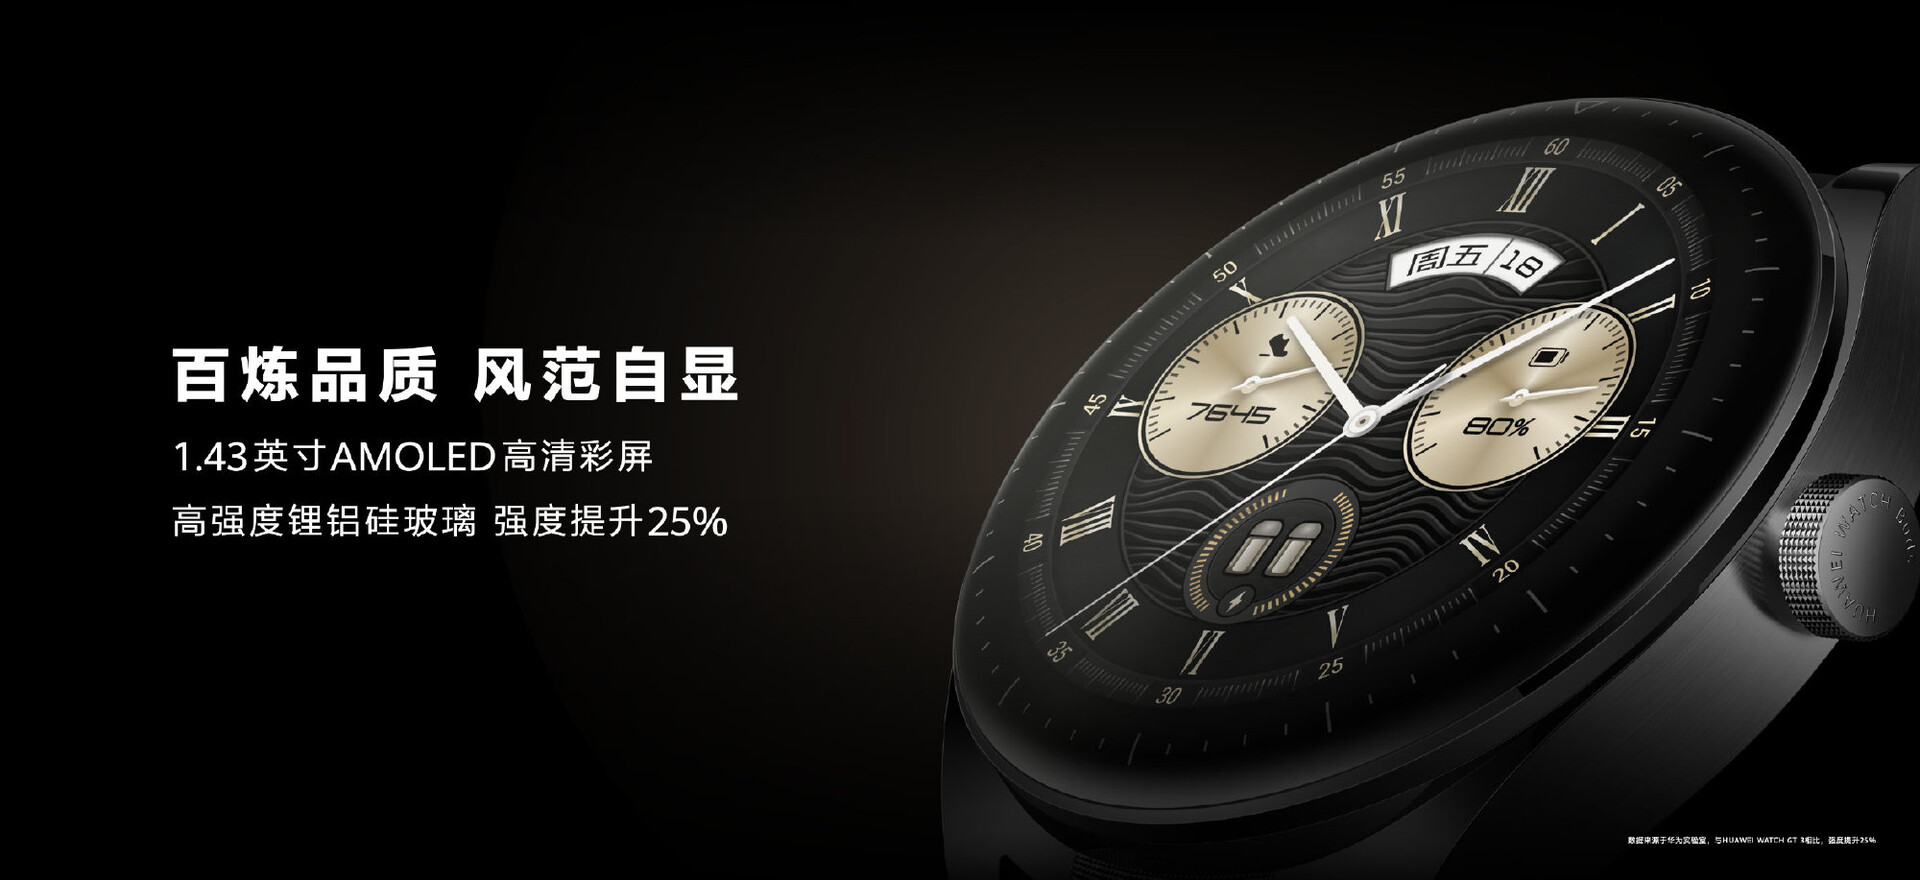 News Smartwatch Buds AMOLED-Display aufklappbarem vorgestellt: Notebookcheck.com Ohrhörer schicker Huawei verstaut - mit Huawei Watch in